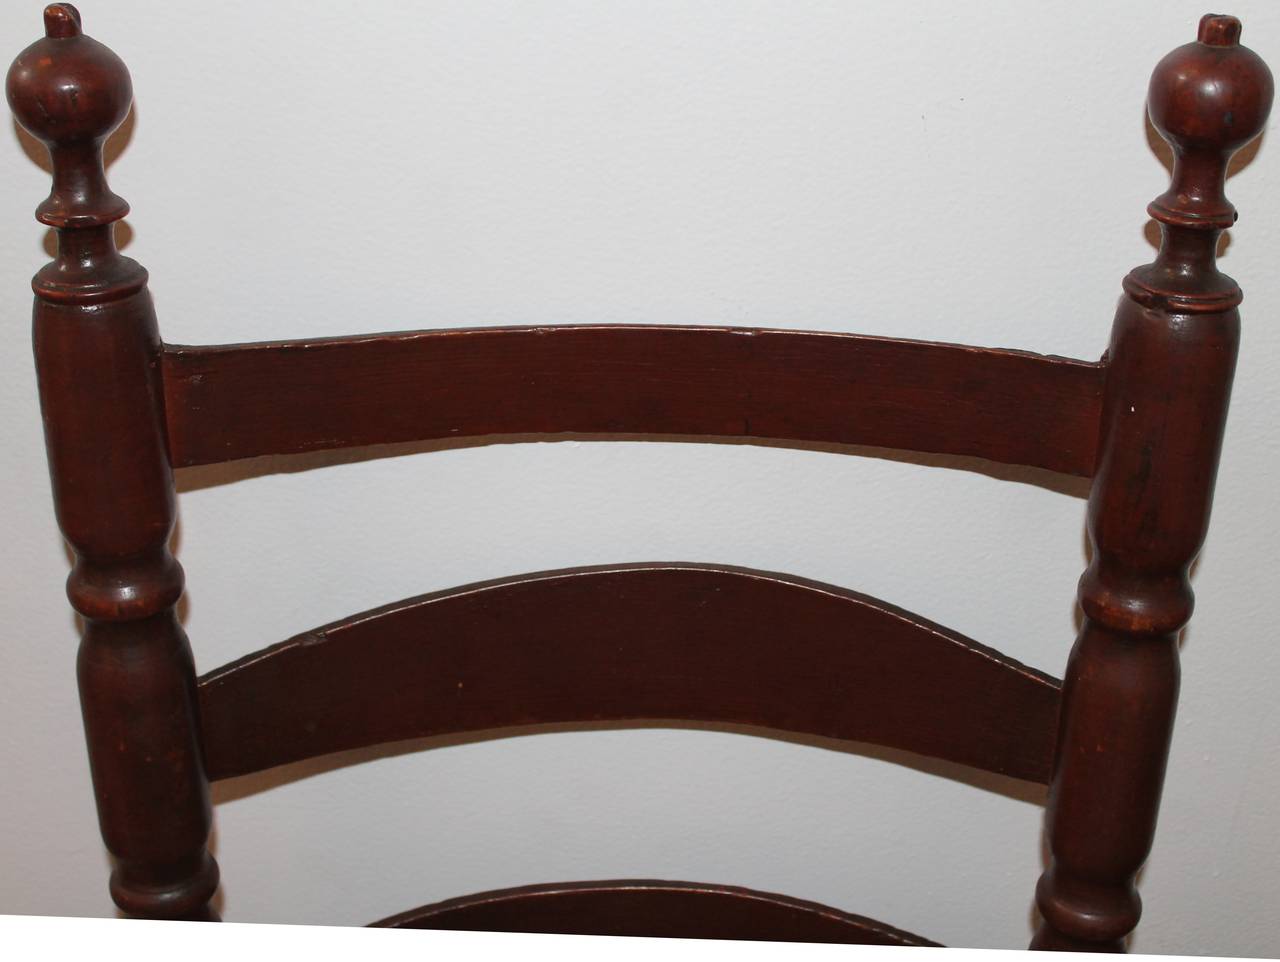 Exquis fauteuil à dossier en échelle en pin peint d'origine du XVIIIe siècle, accompagné d'un coussin en lin bleu et blanc fait sur mesure. Ce fauteuil est très patiné et sa peinture d'origine est intacte.

Avec le coussin en lin, la hauteur du